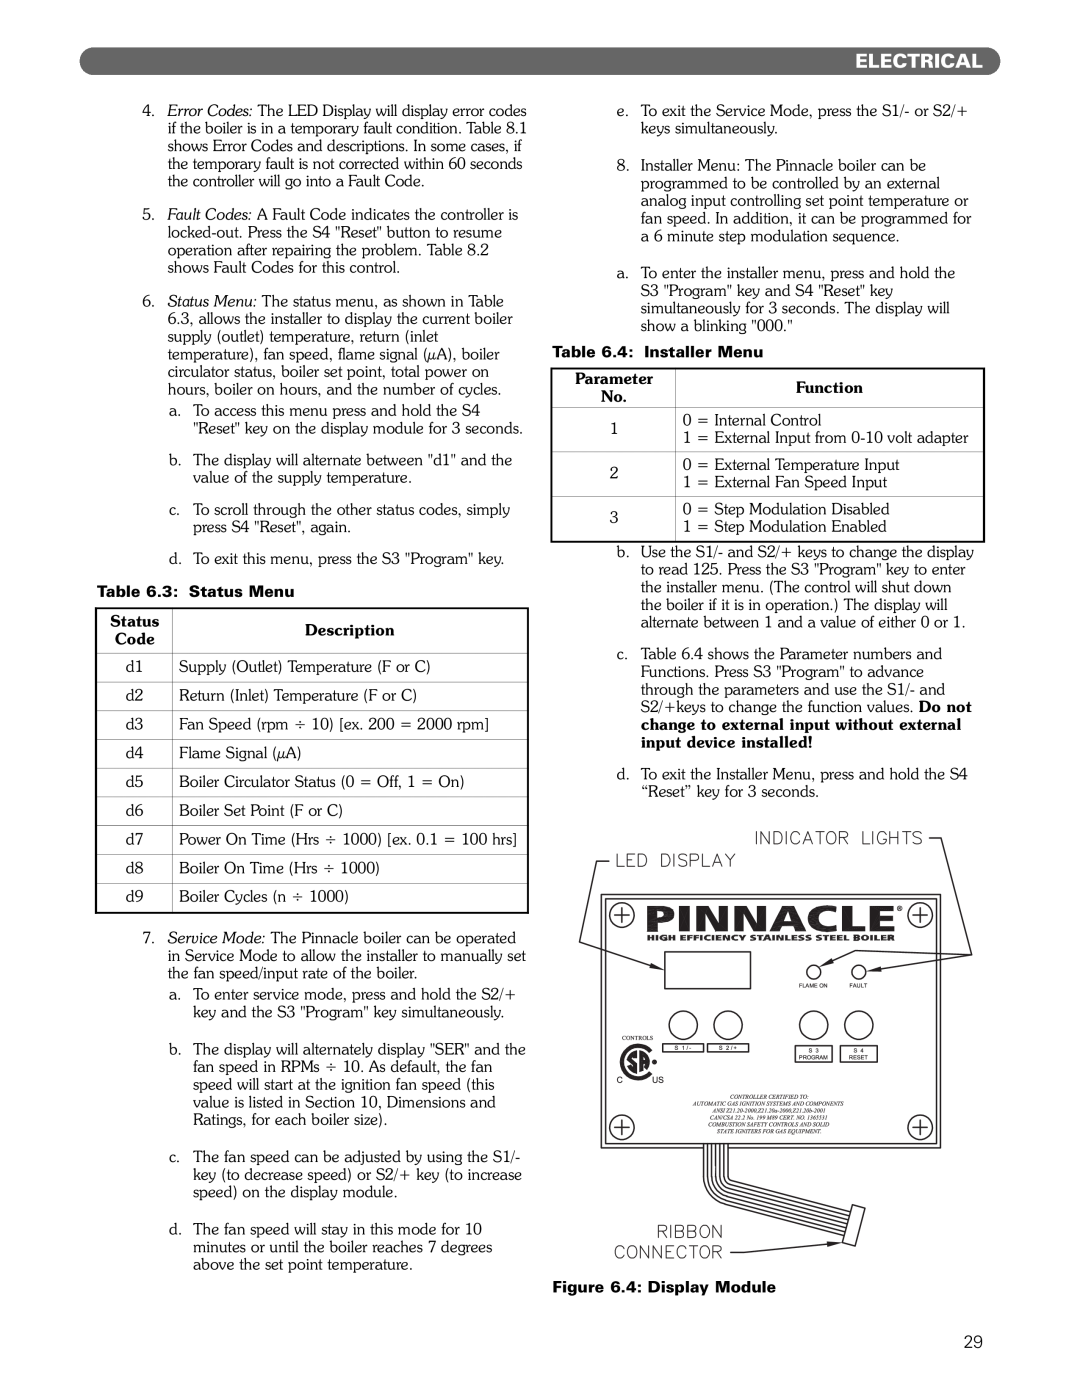 PB Heat Gas Boiler Electrical, 3 Status Menu, Description, Code, 4 Installer Menu, Parameter, Function, 4 Display Module 